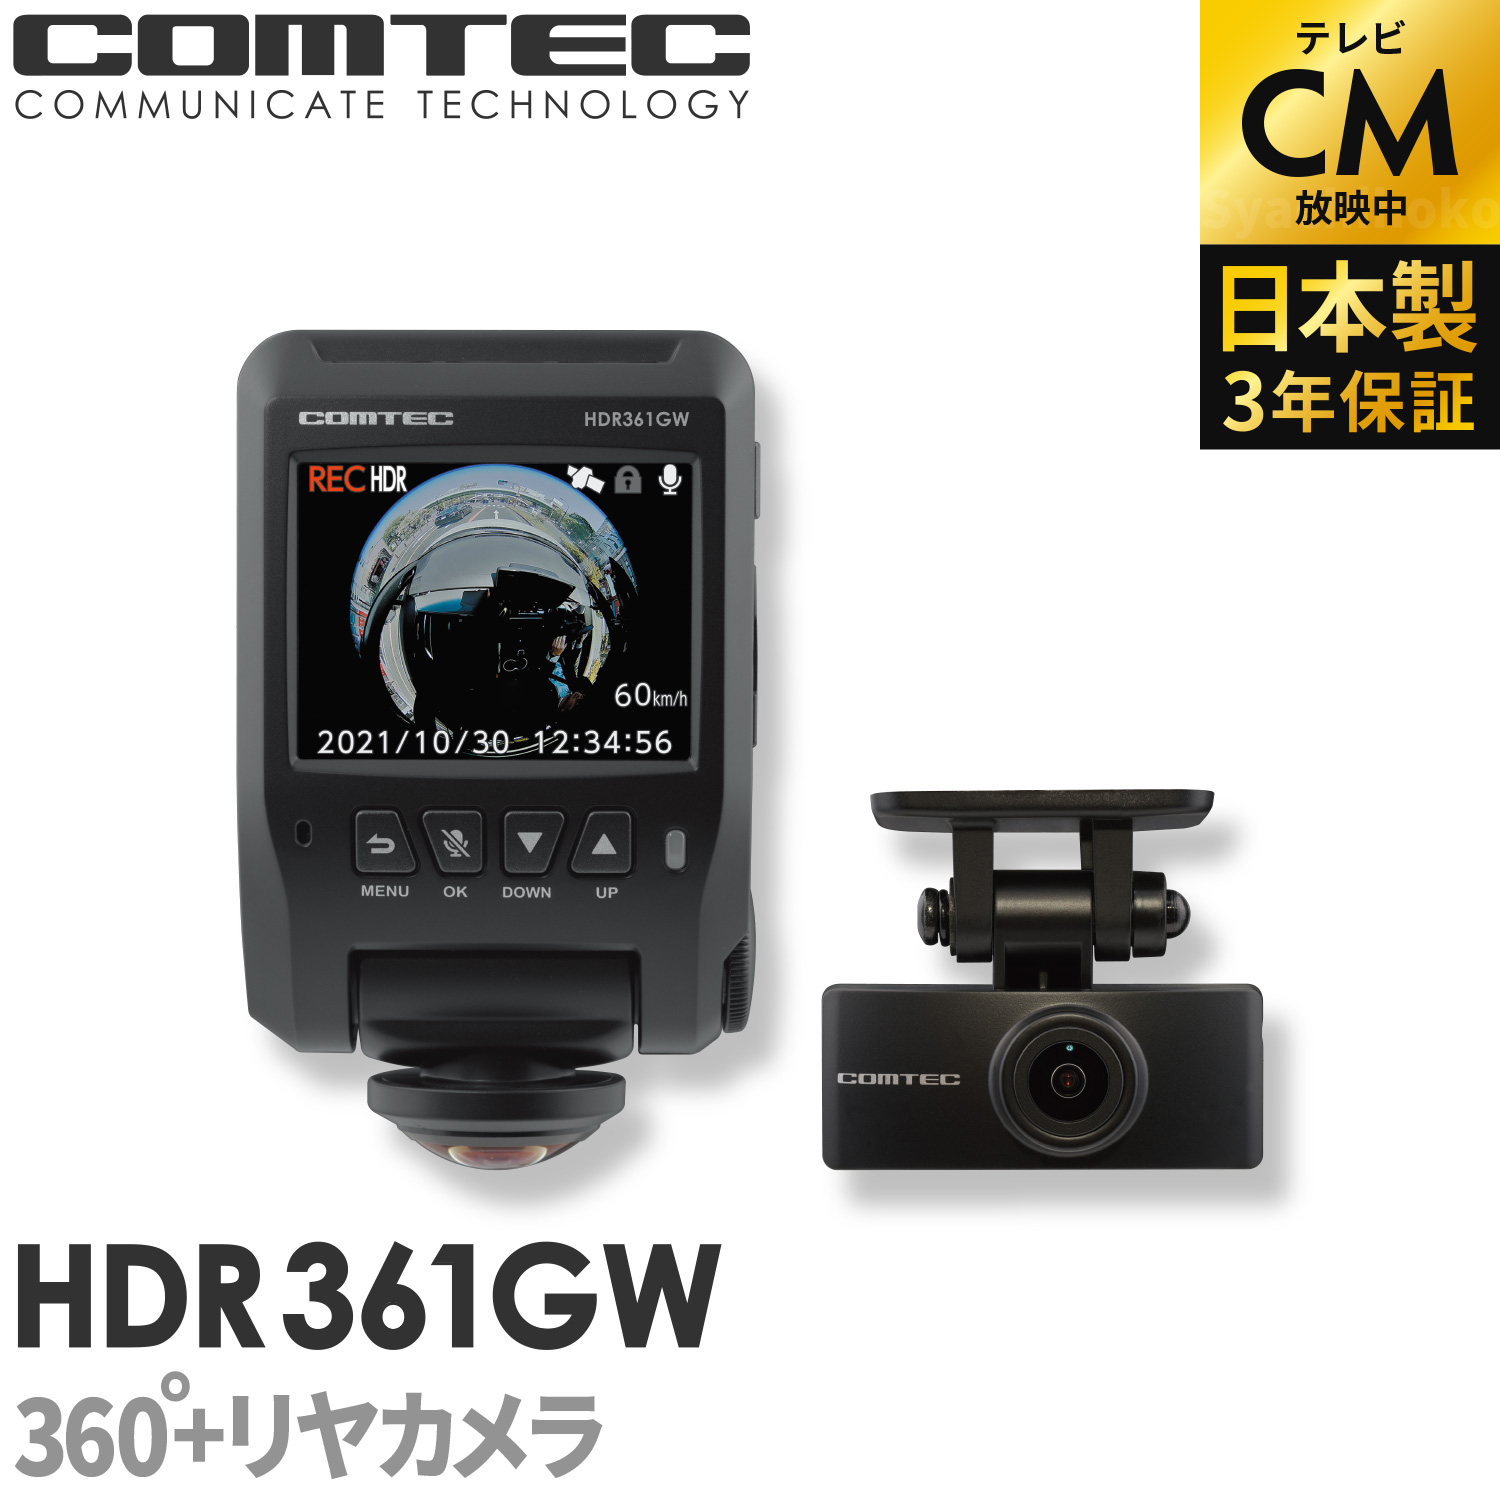 コムテック ZDR058 通信型ドライブレコーダー 前後2カメラ 撮影データクラウド自動保存 スマートフォンで確認 日本製 3年保証 駐車監視対応